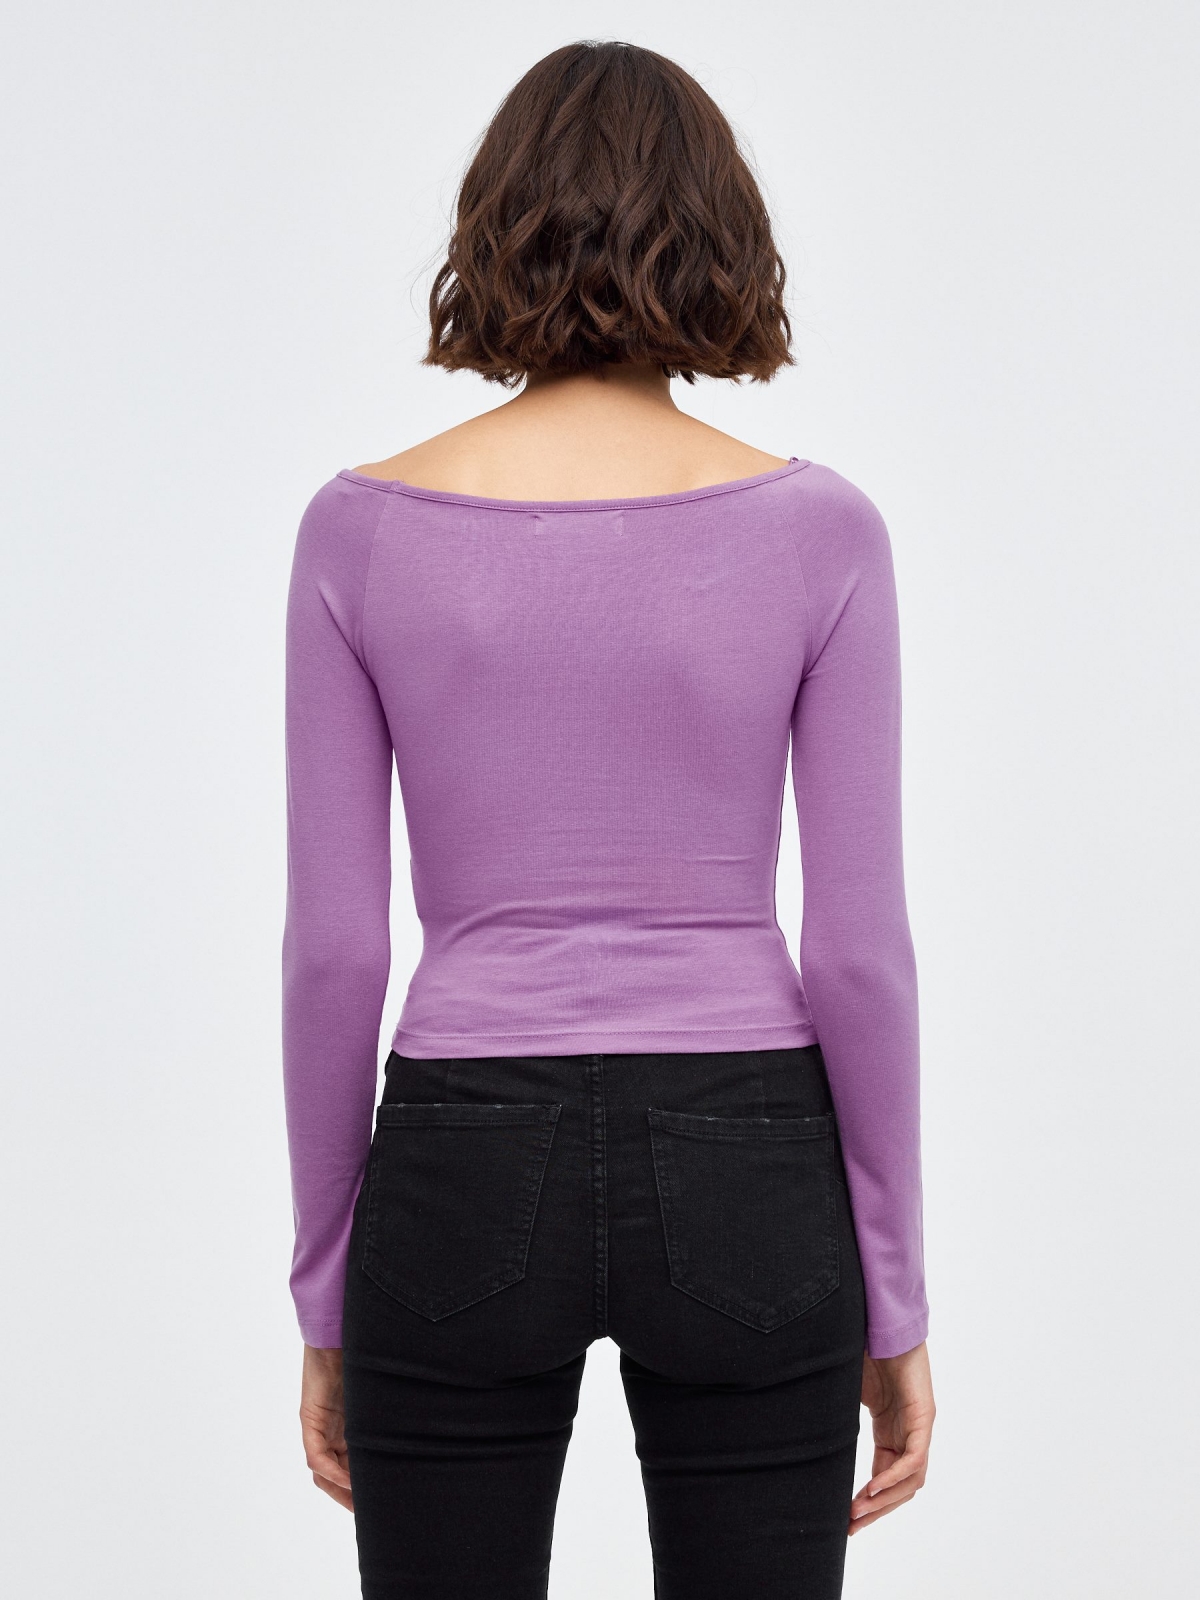 T-shirt com manga raglan púrpura vista meia traseira